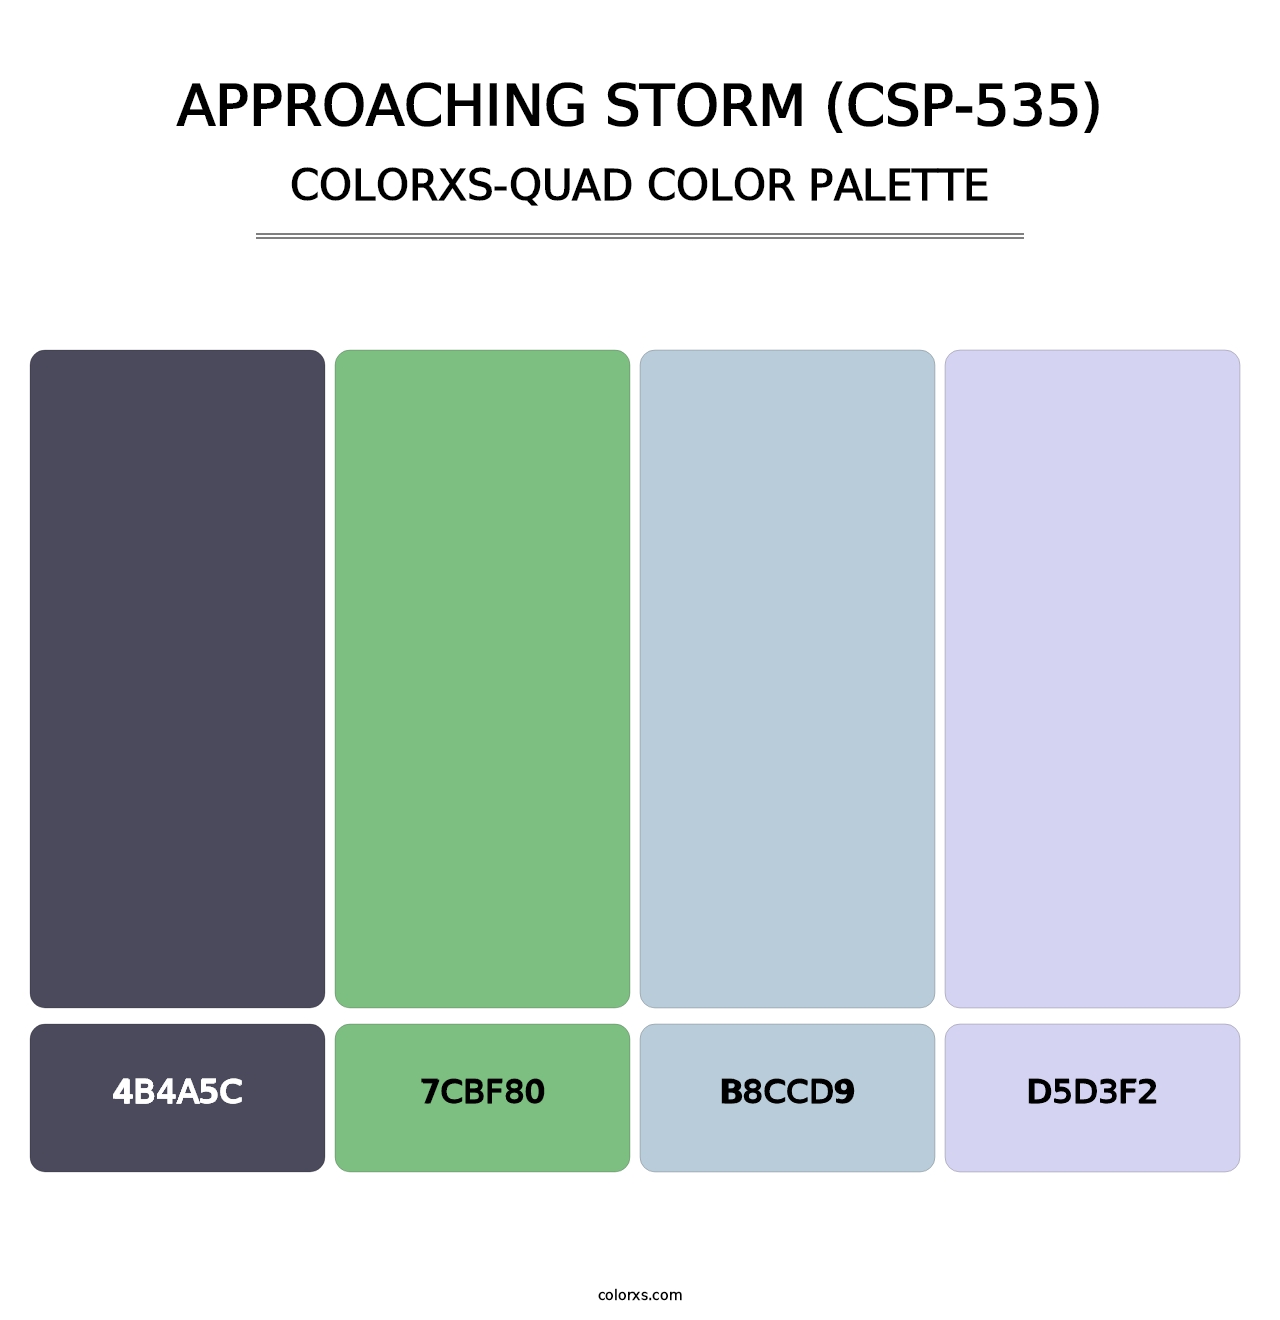 Approaching Storm (CSP-535) - Colorxs Quad Palette